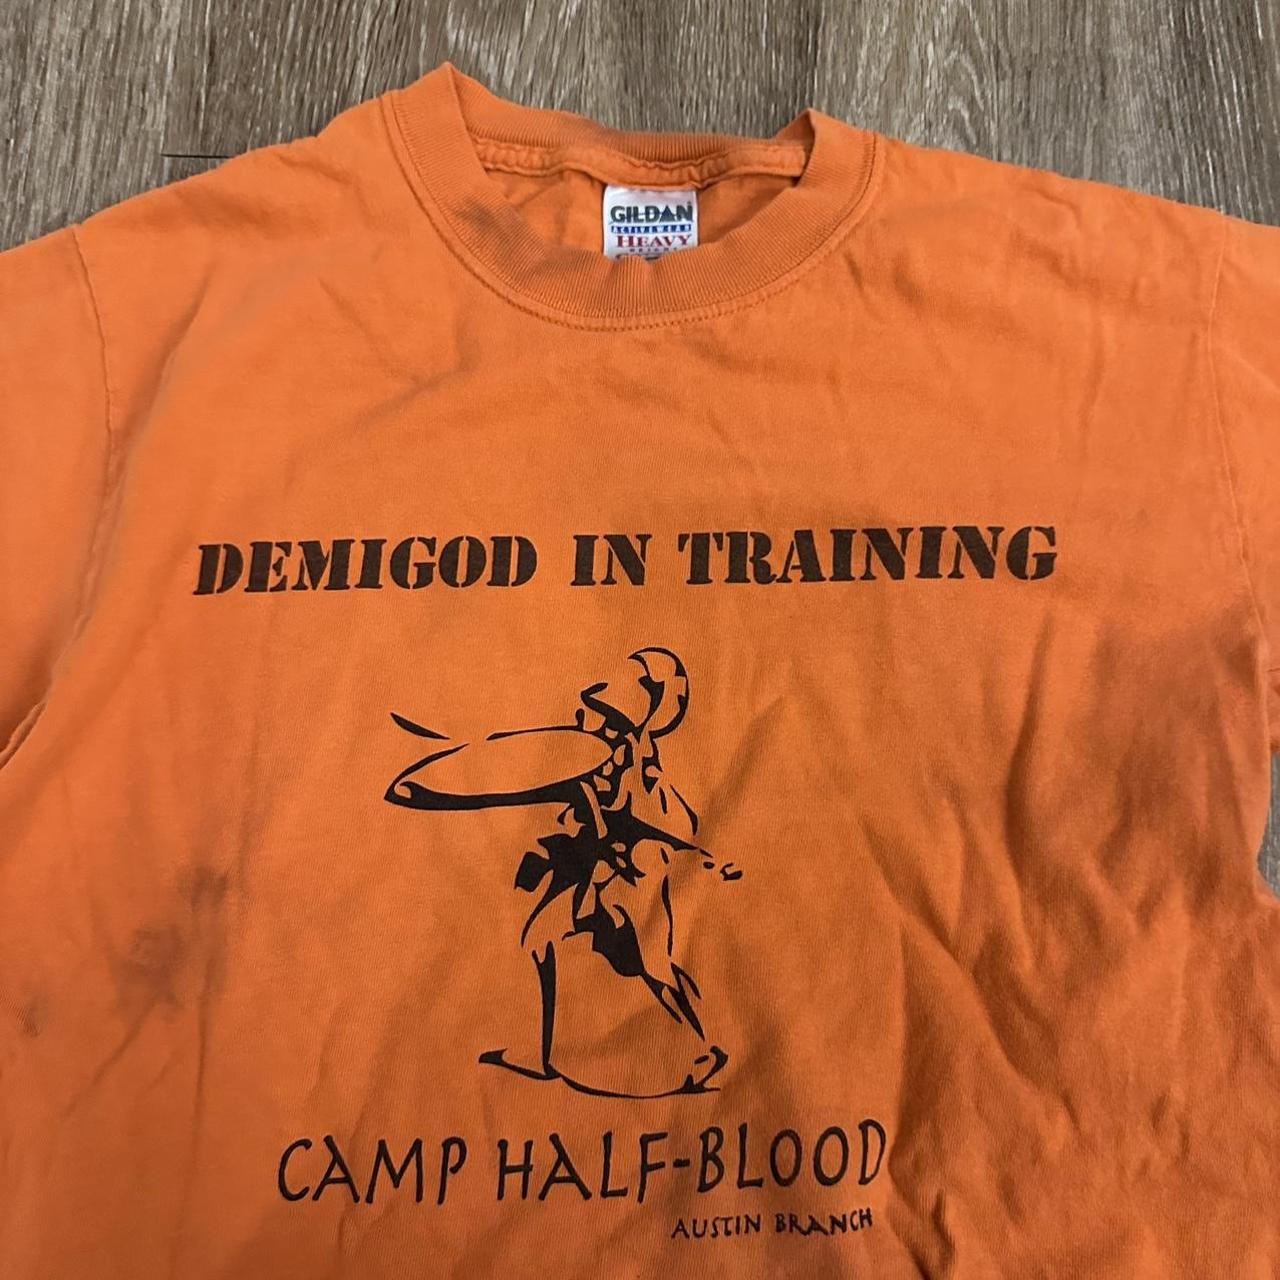 Camp Half-Blood, Austin Branch